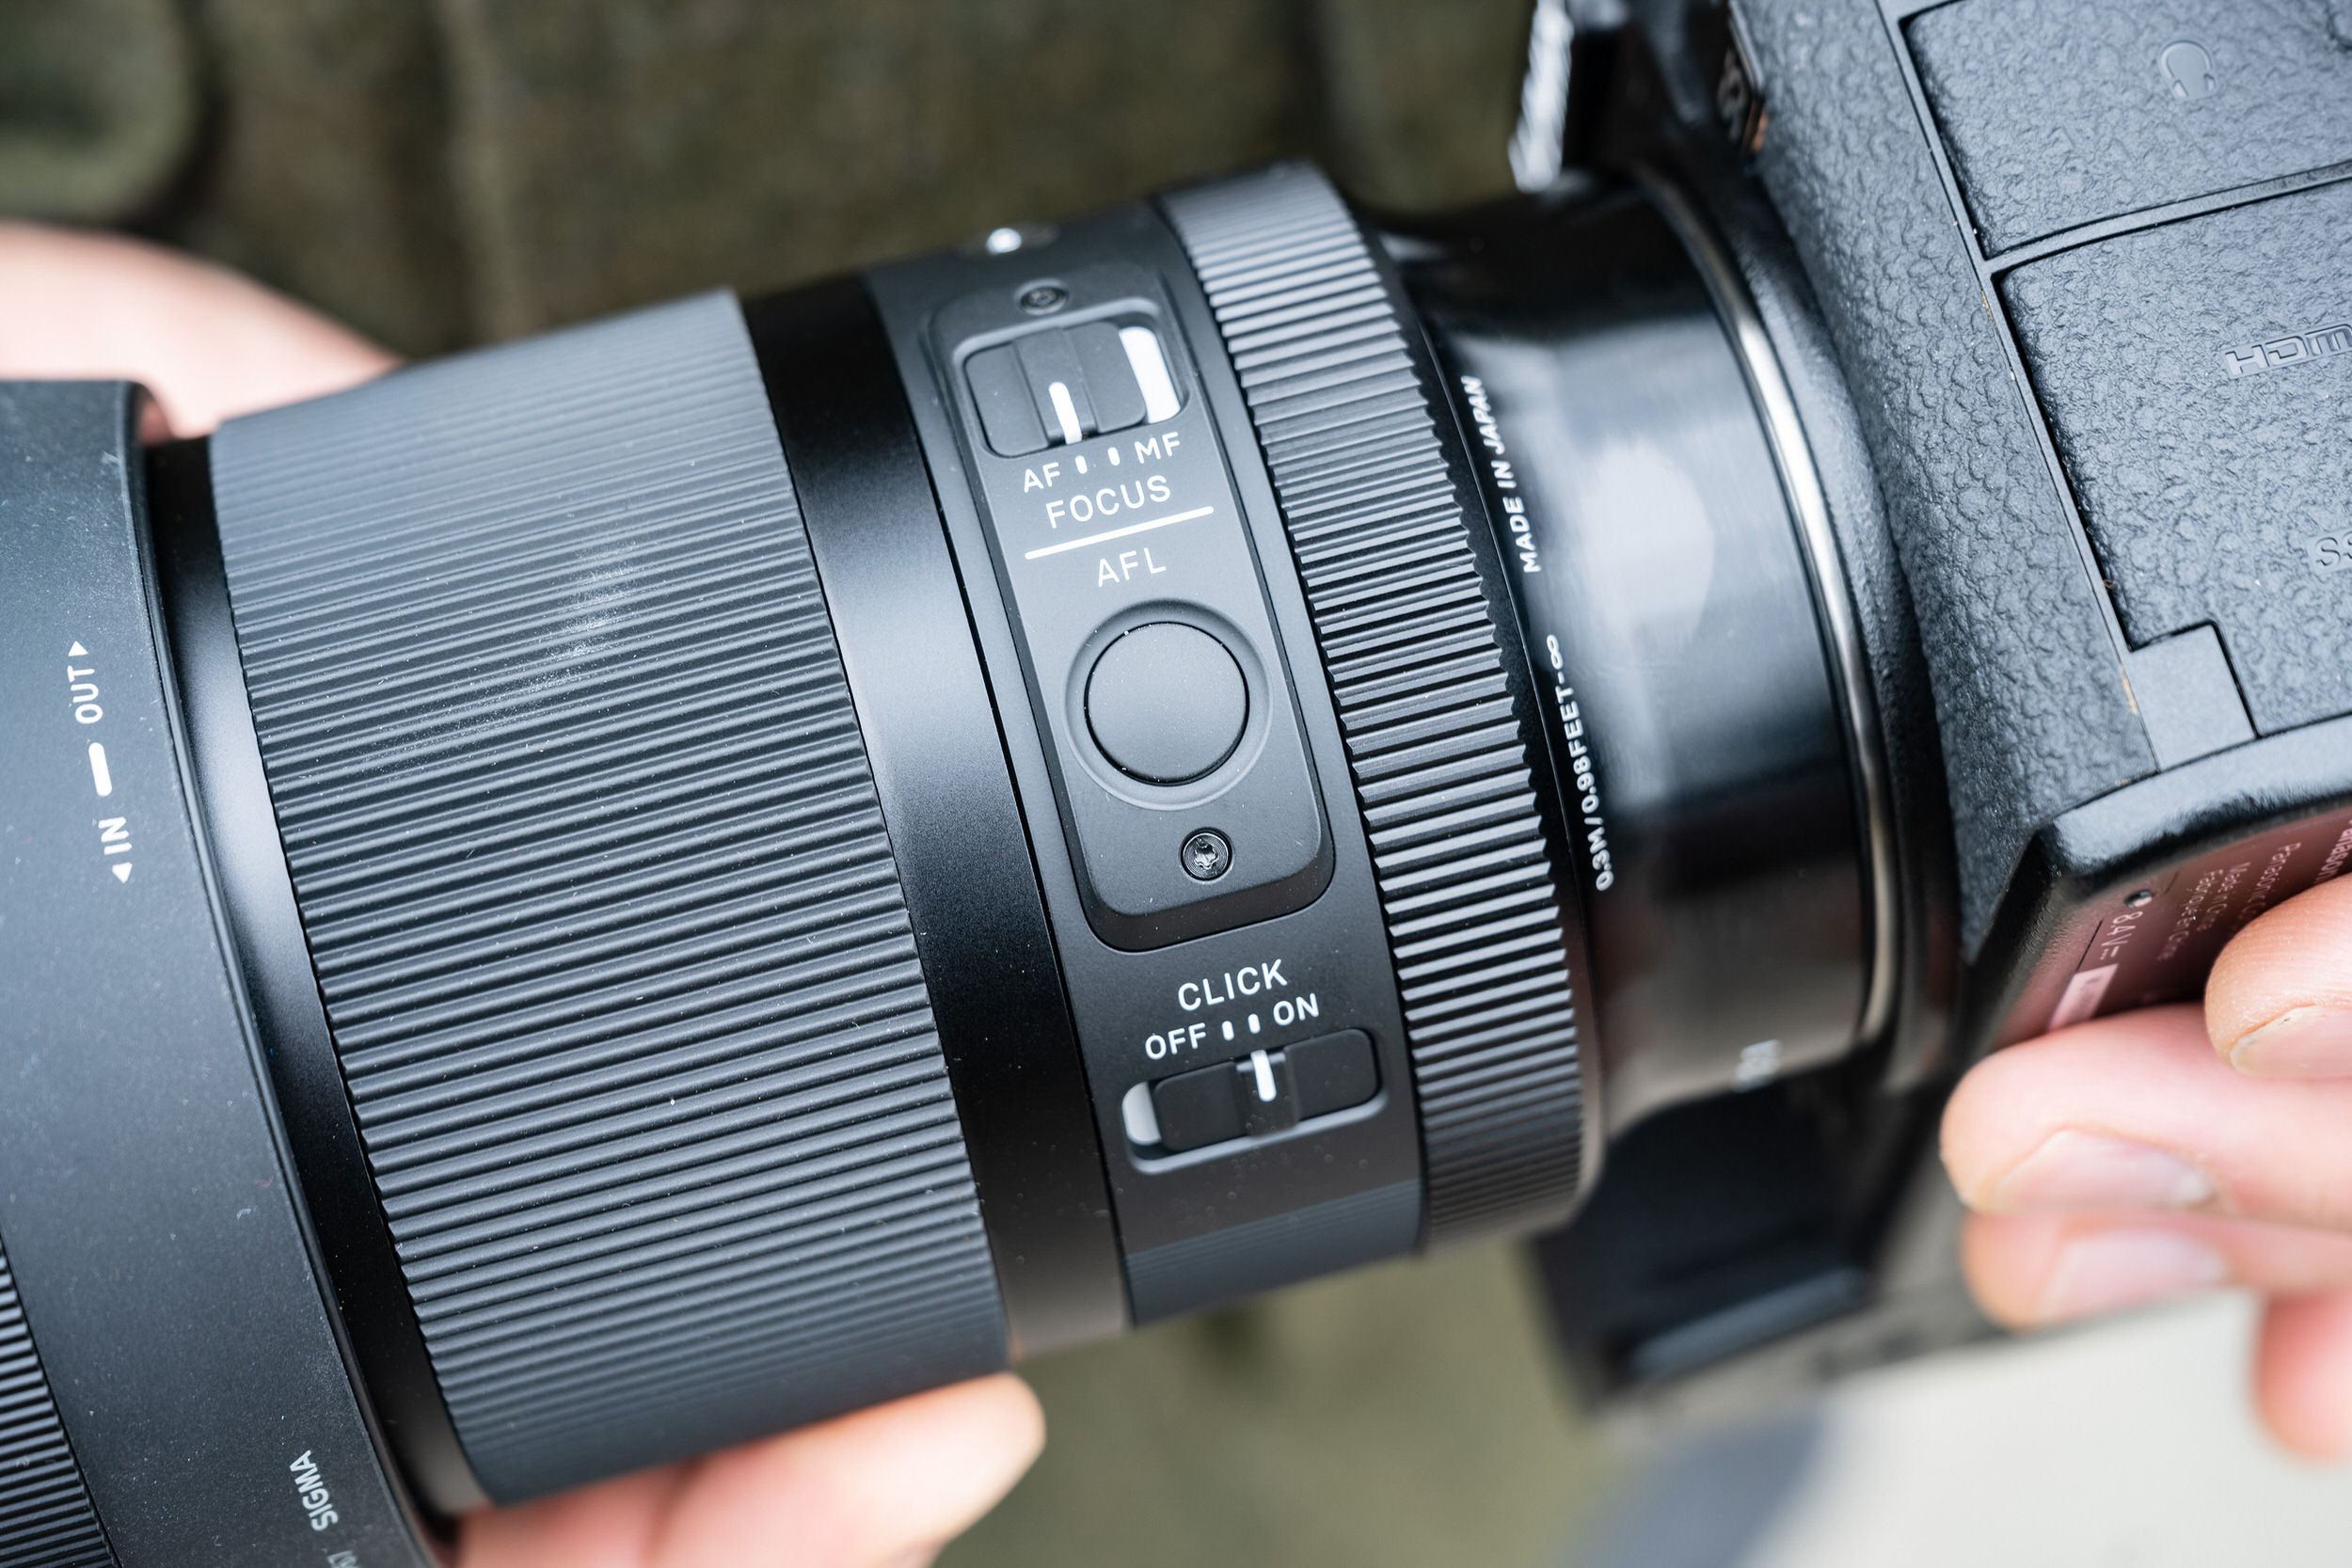 Sigma ra mắt ống kính 35mm F1.4 DG DN Art được làm mới hoàn toàn dành cho máy ảnh mirrorless